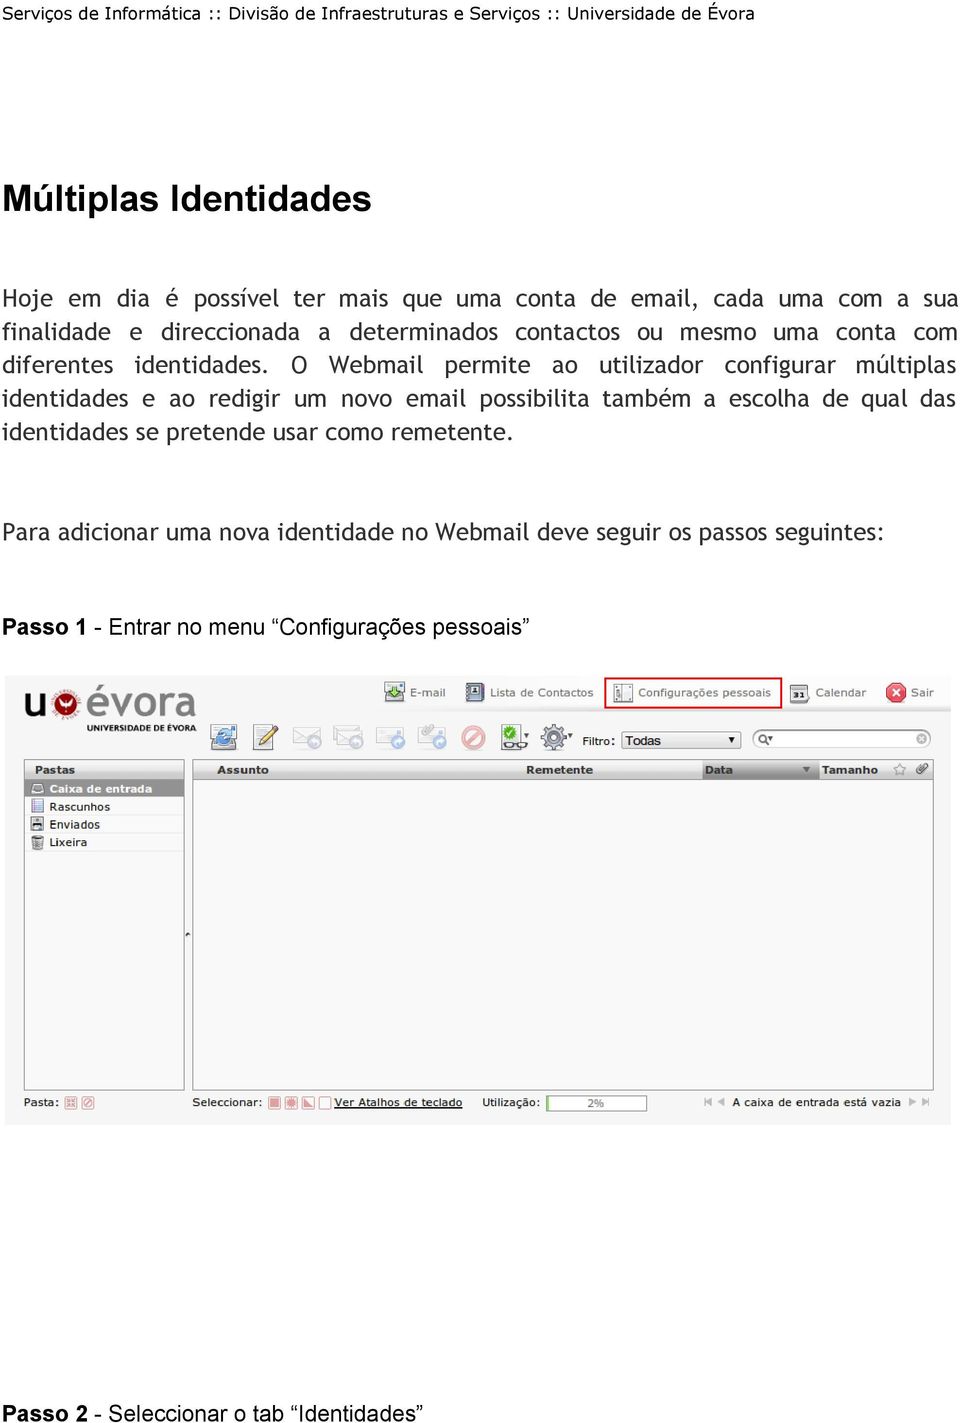 O Webmail permite ao utilizador configurar múltiplas identidades e ao redigir um novo email possibilita também a escolha de qual das